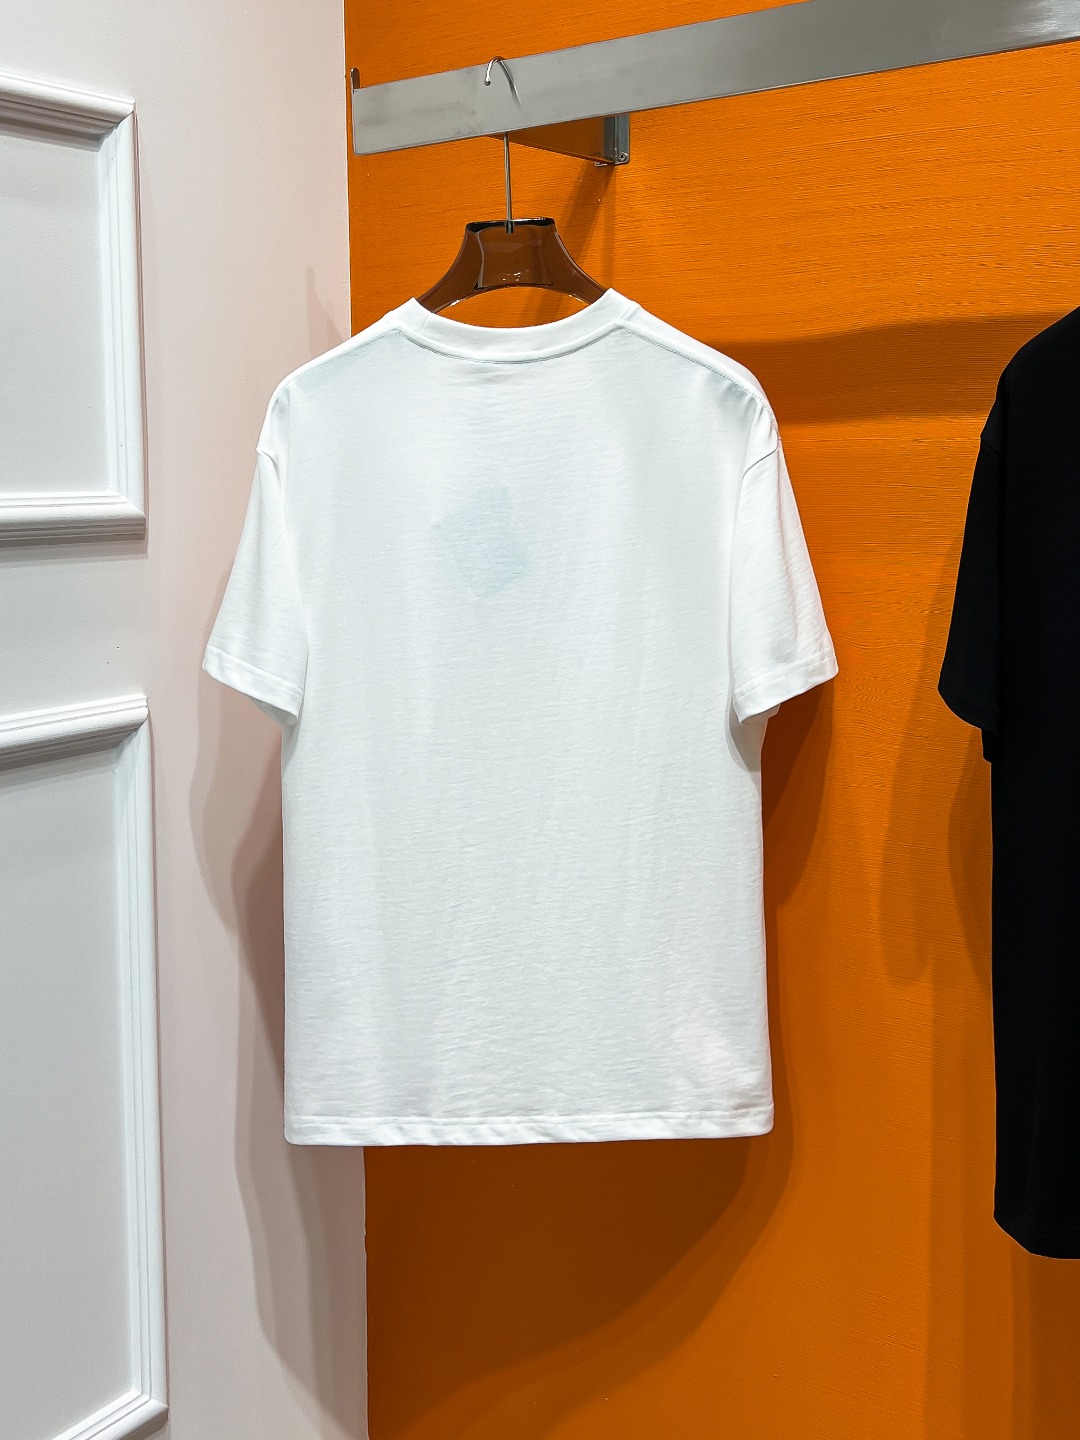 FENDI#24春夏顶级专柜同步短袖T恤3标齐全采用客供进口100%-32支双股新疆棉面料制成专柜原版面